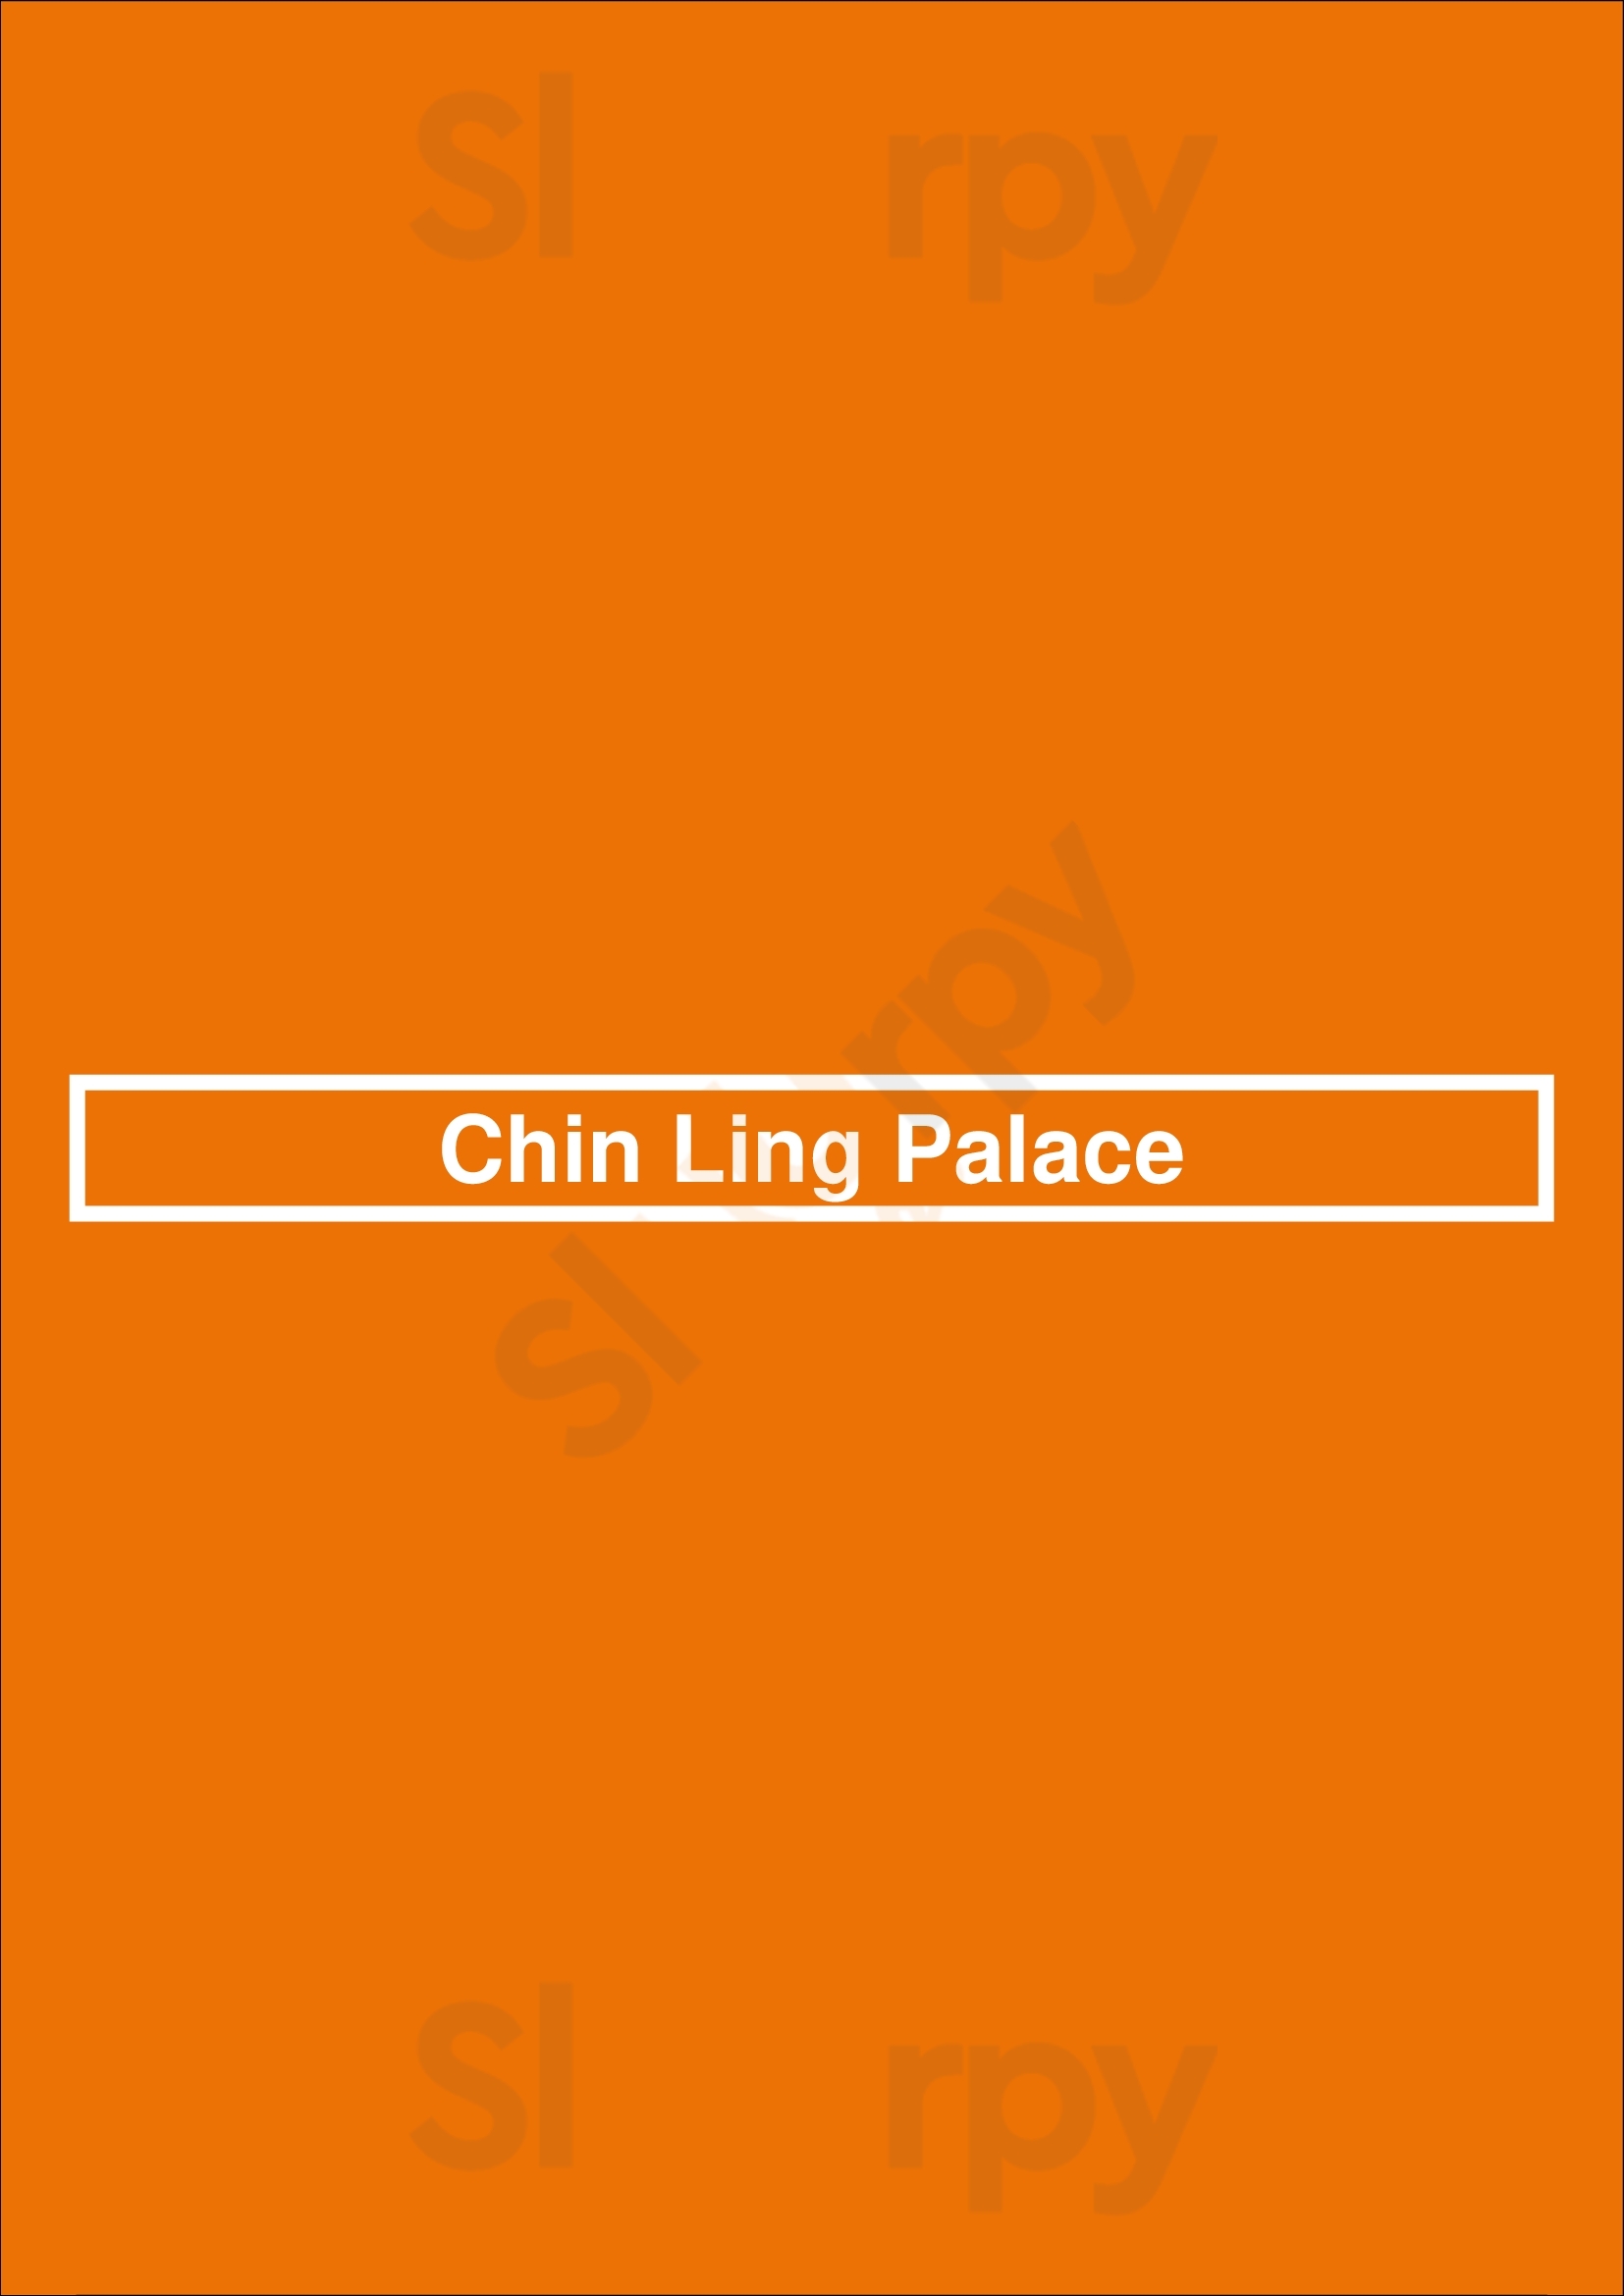 Chin Ling Palace Riverside Menu - 1